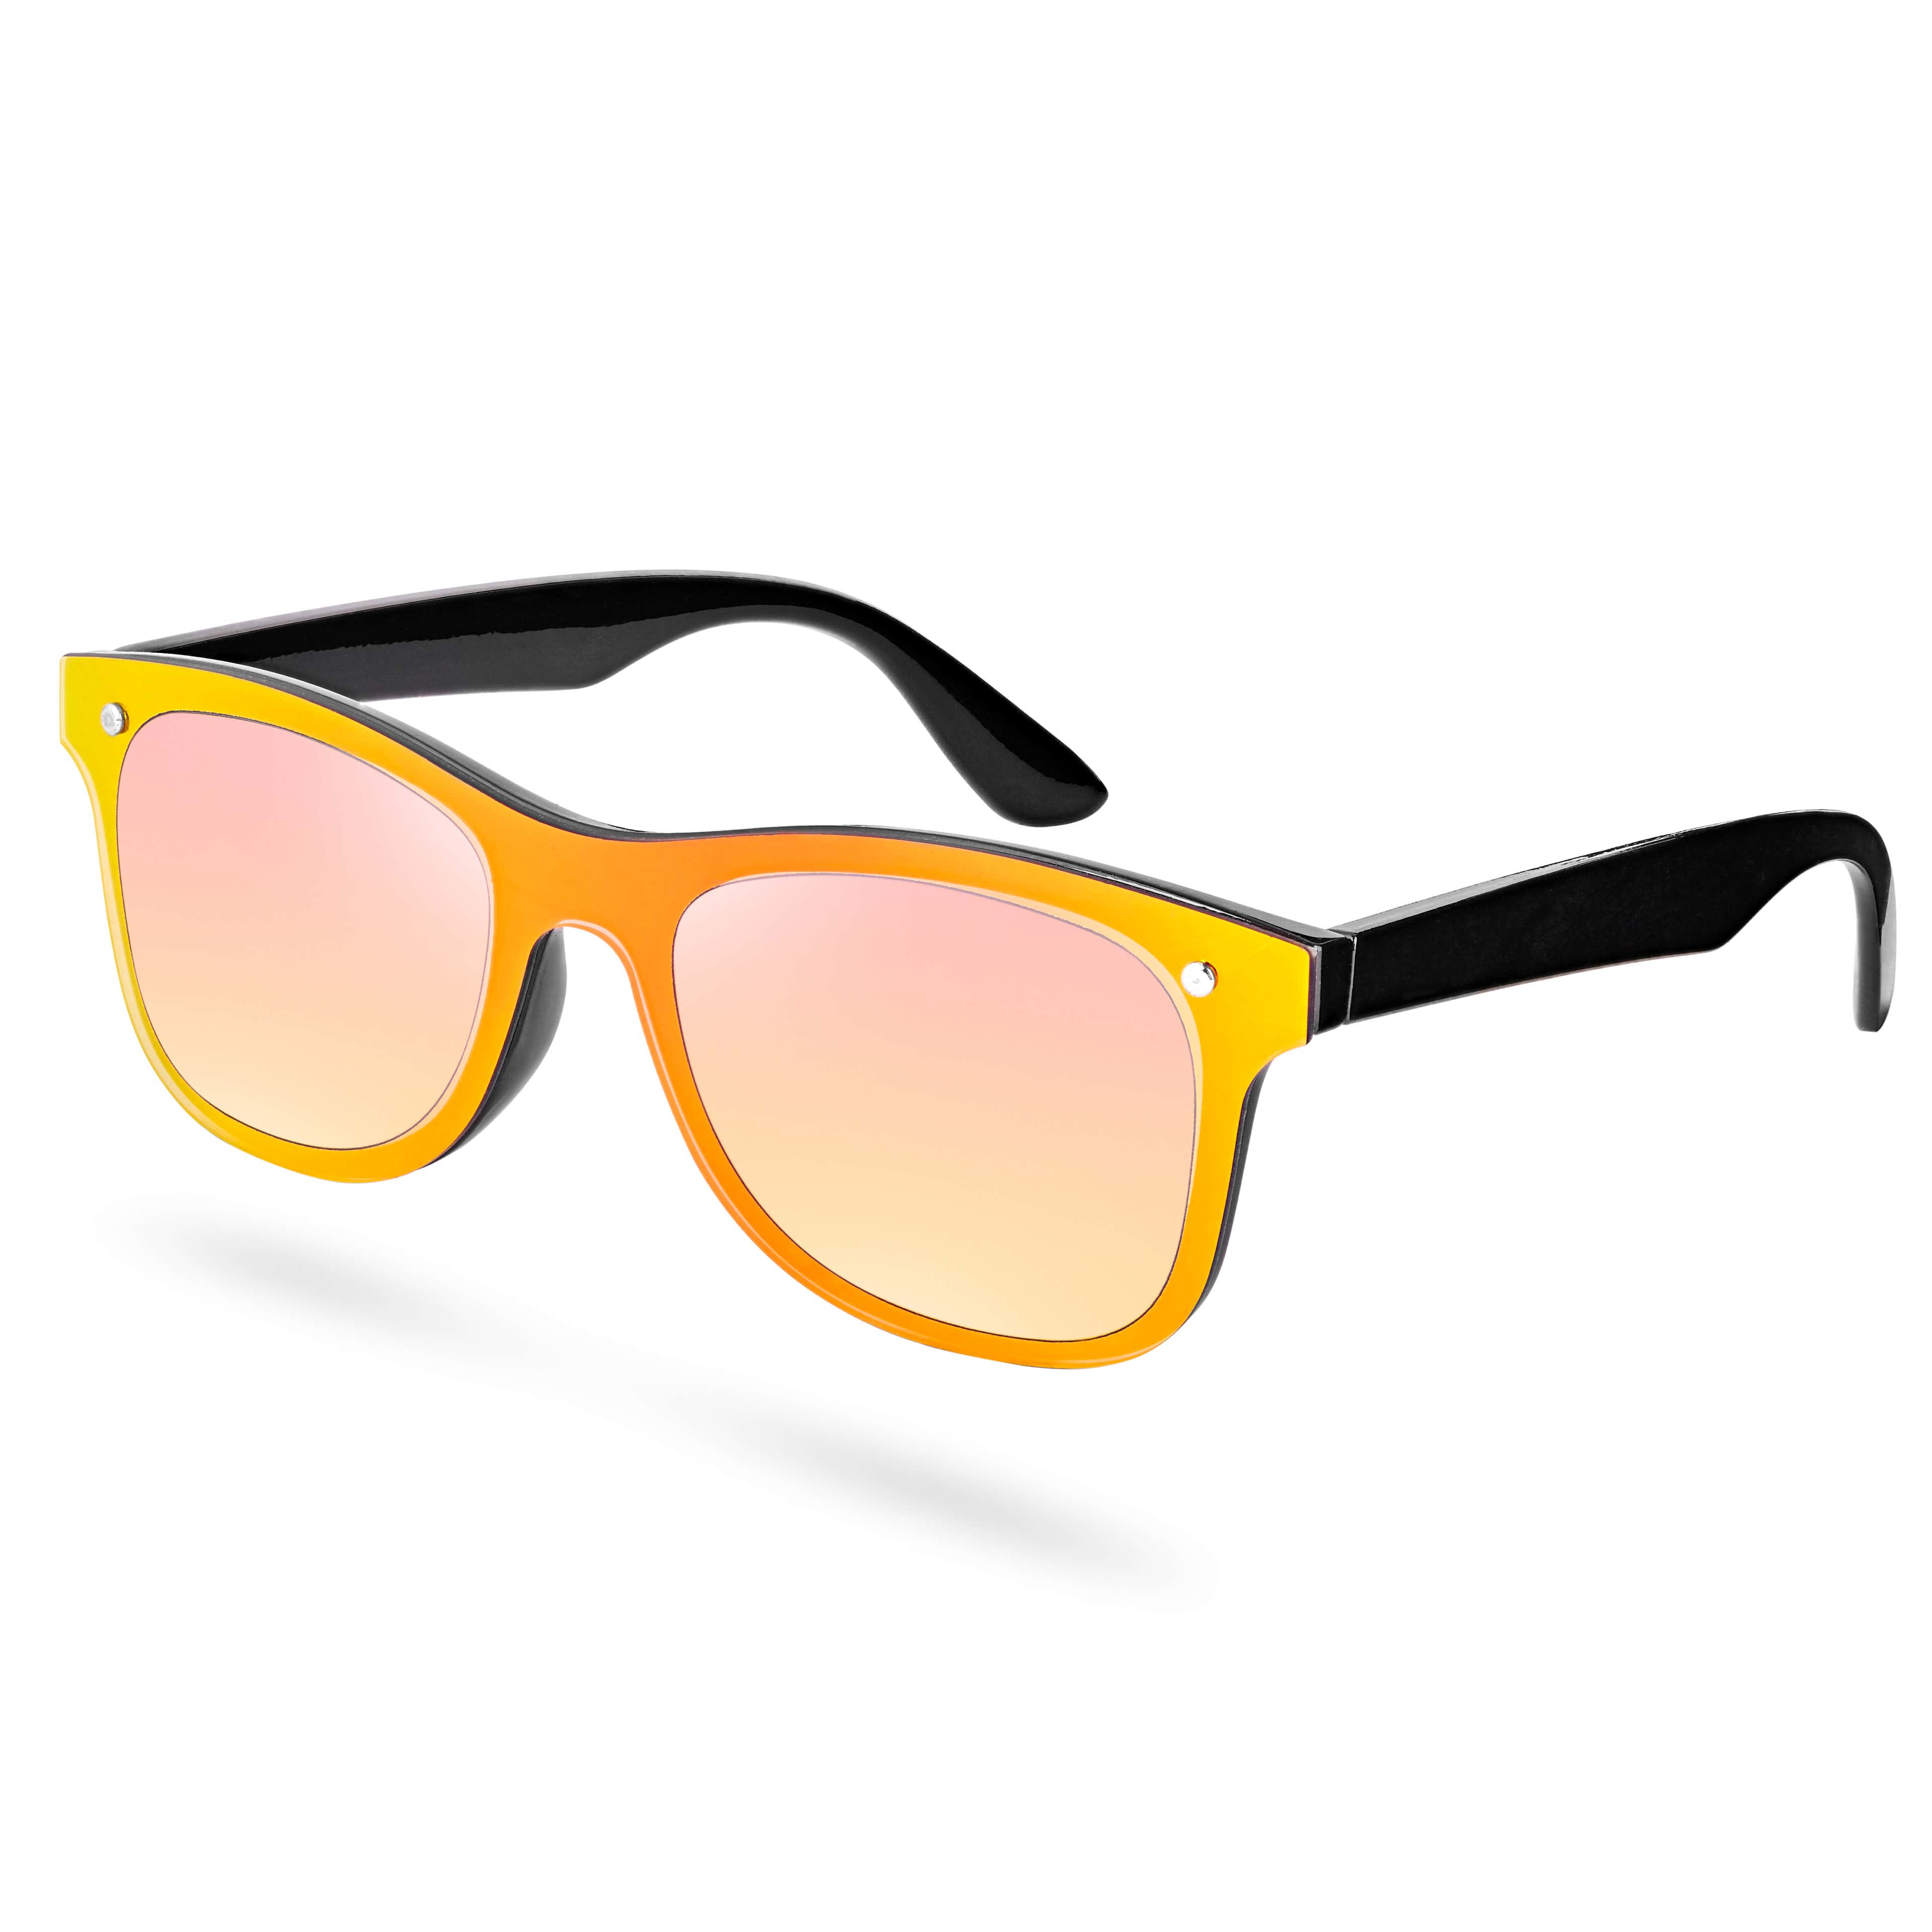 Óculos de Sol com Armação Amarela e Preta